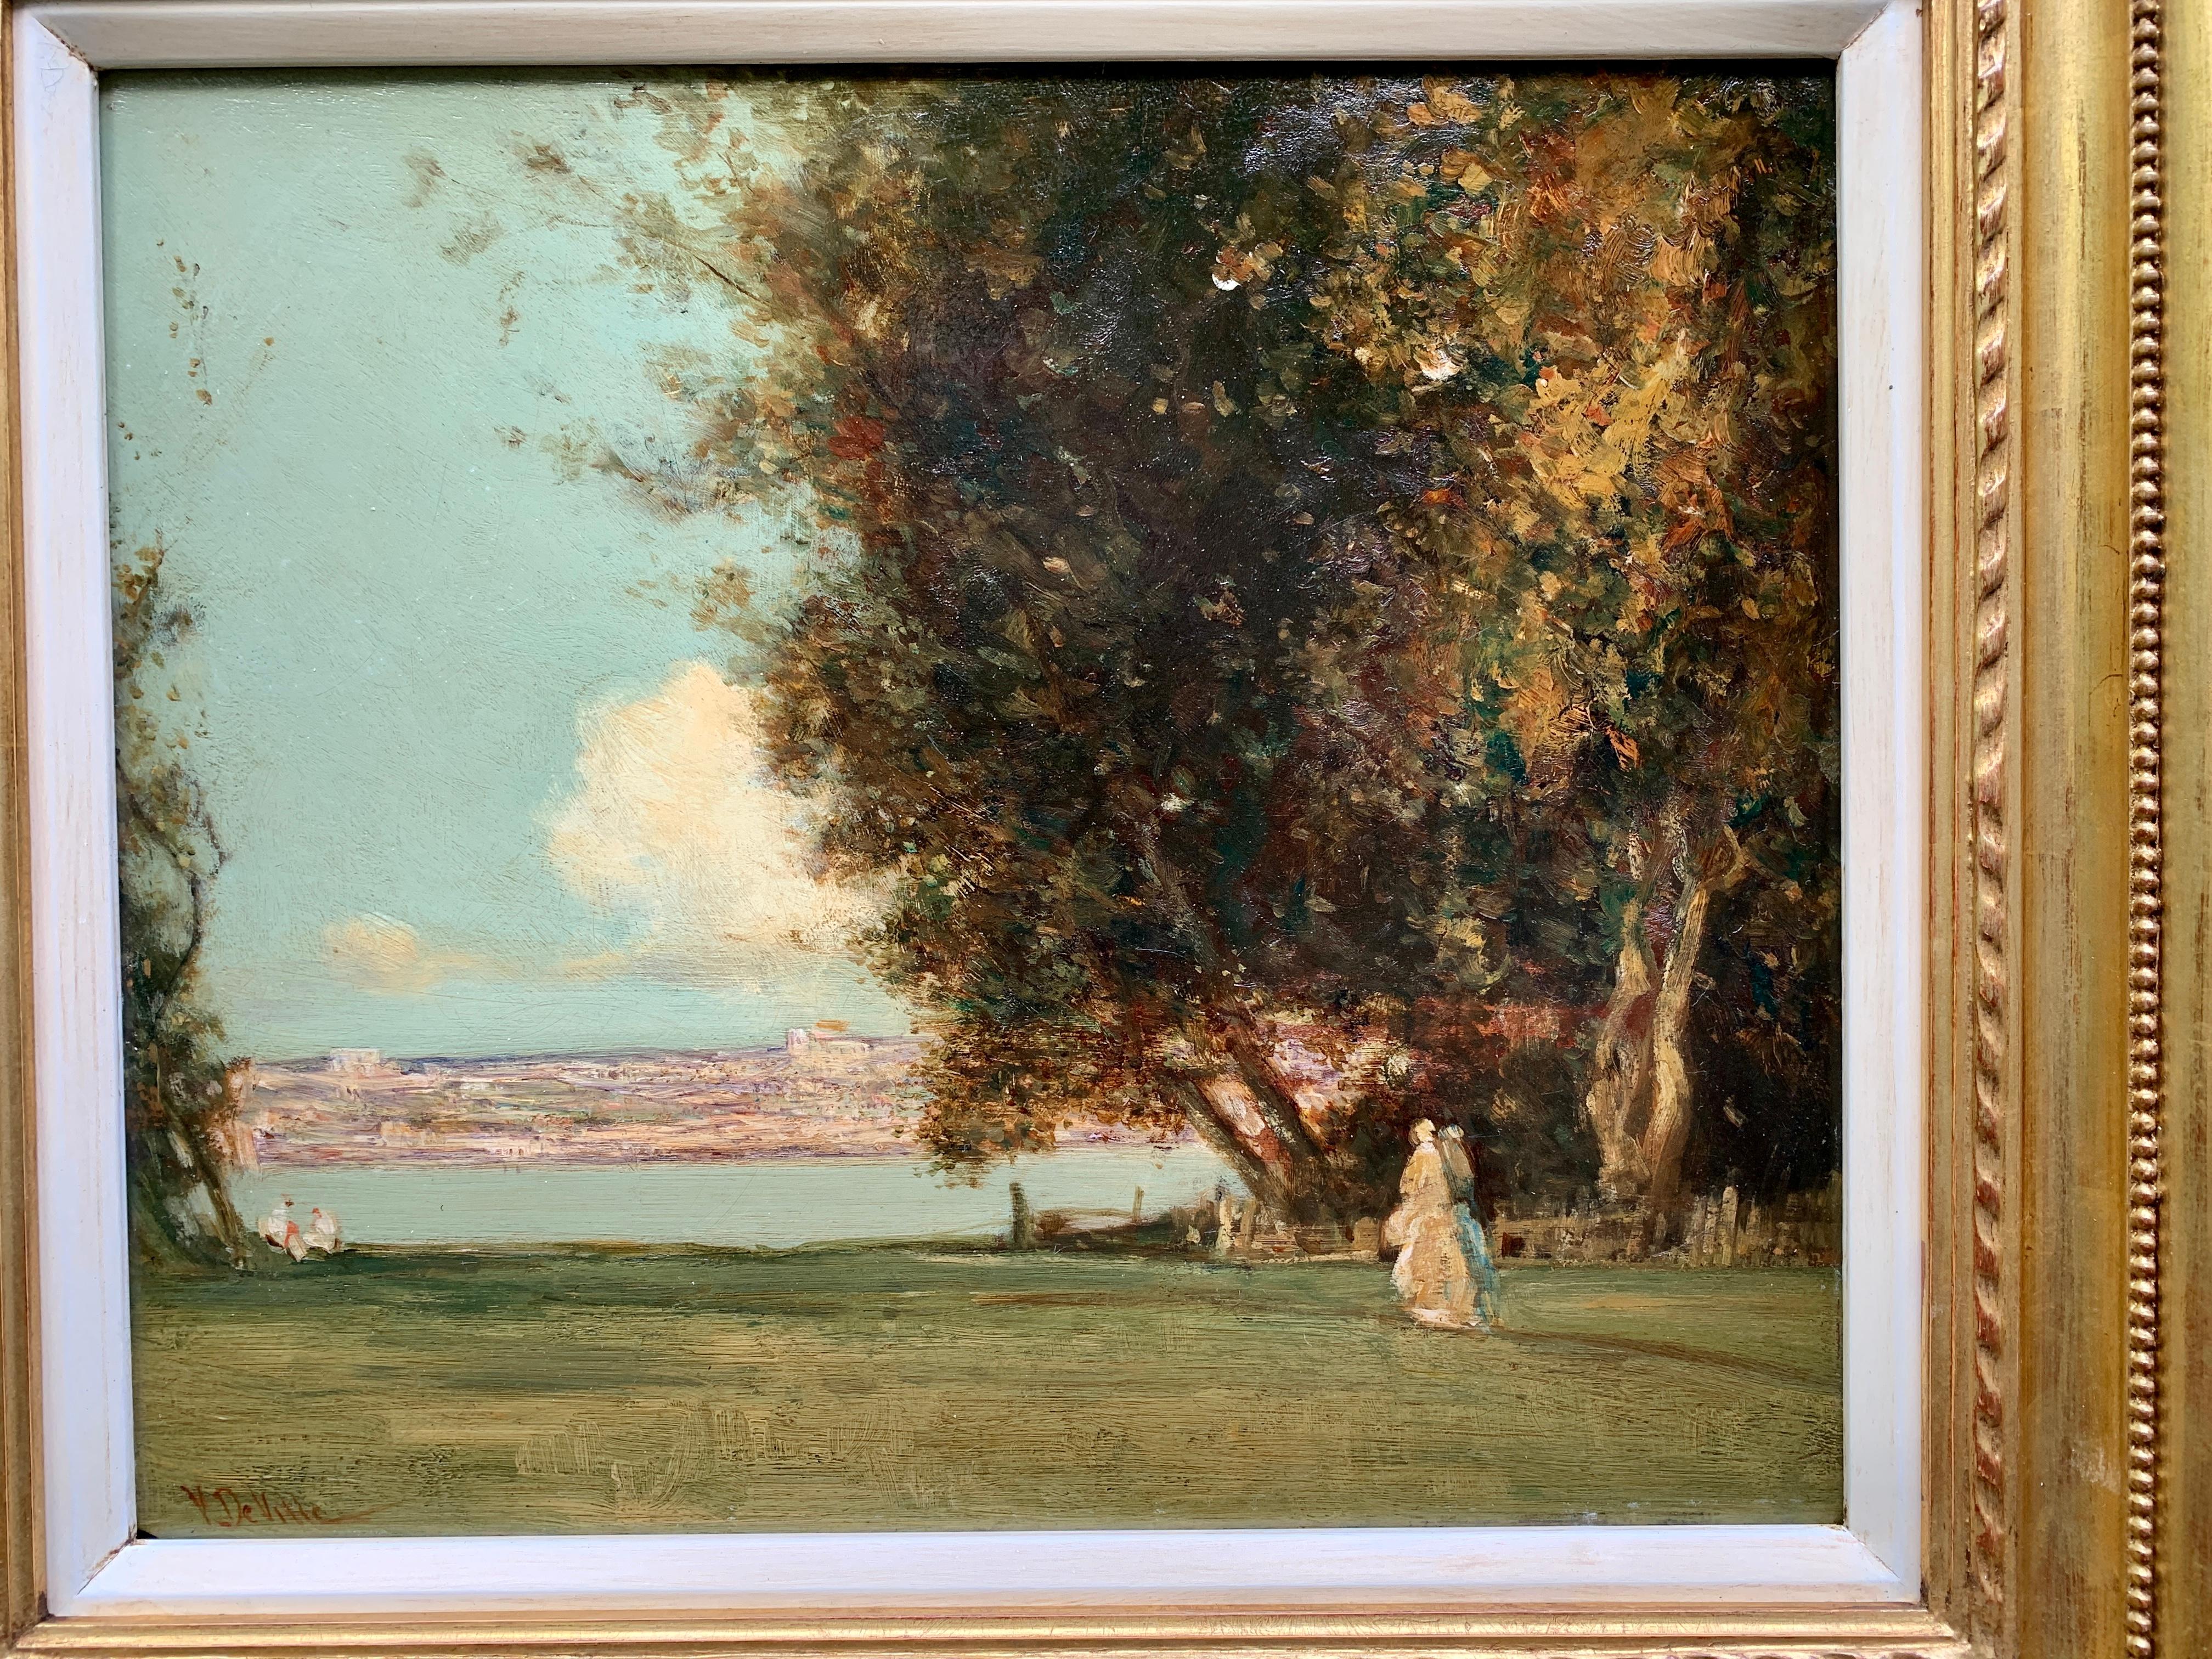 Antiquité, paysage classique impressionniste anglais du 19e siècle avec personnages  - Painting de Joseph Vickers De Ville